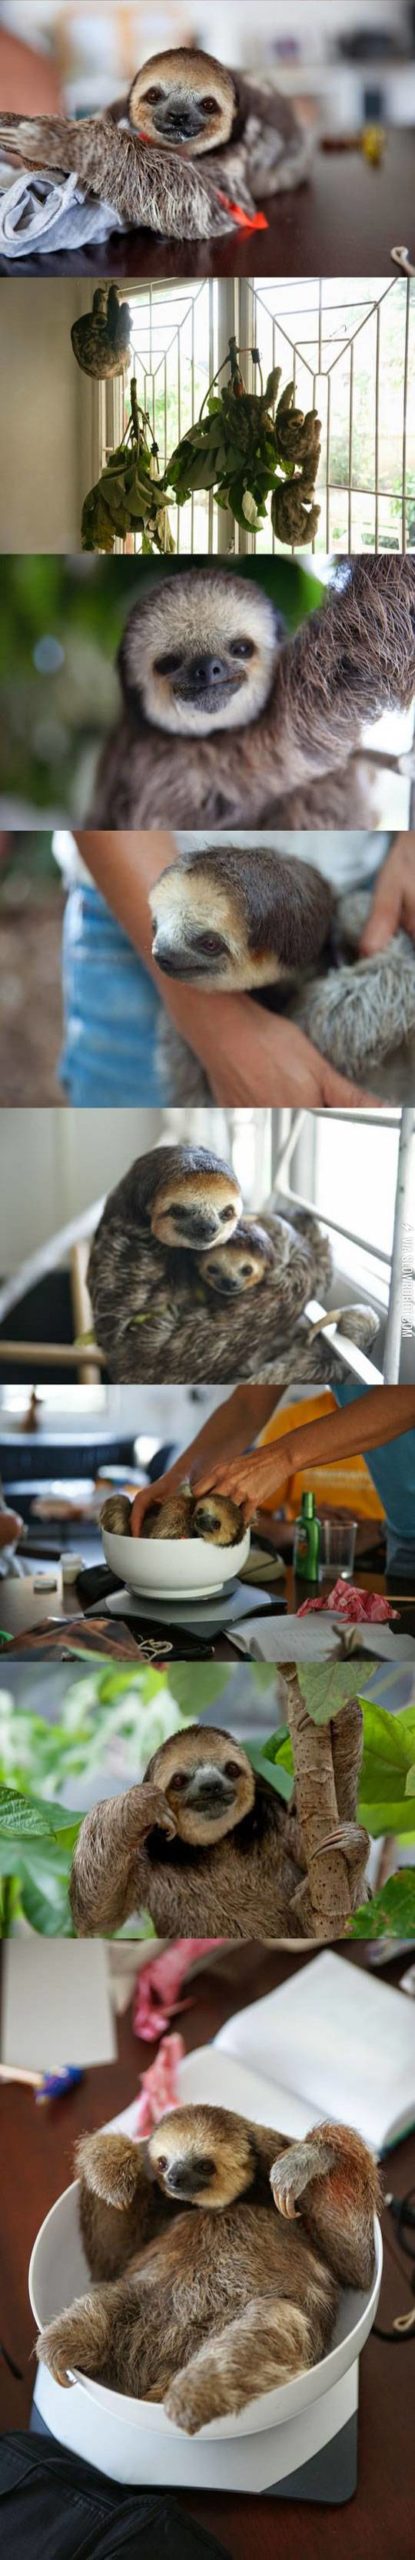 The+sloth+life.